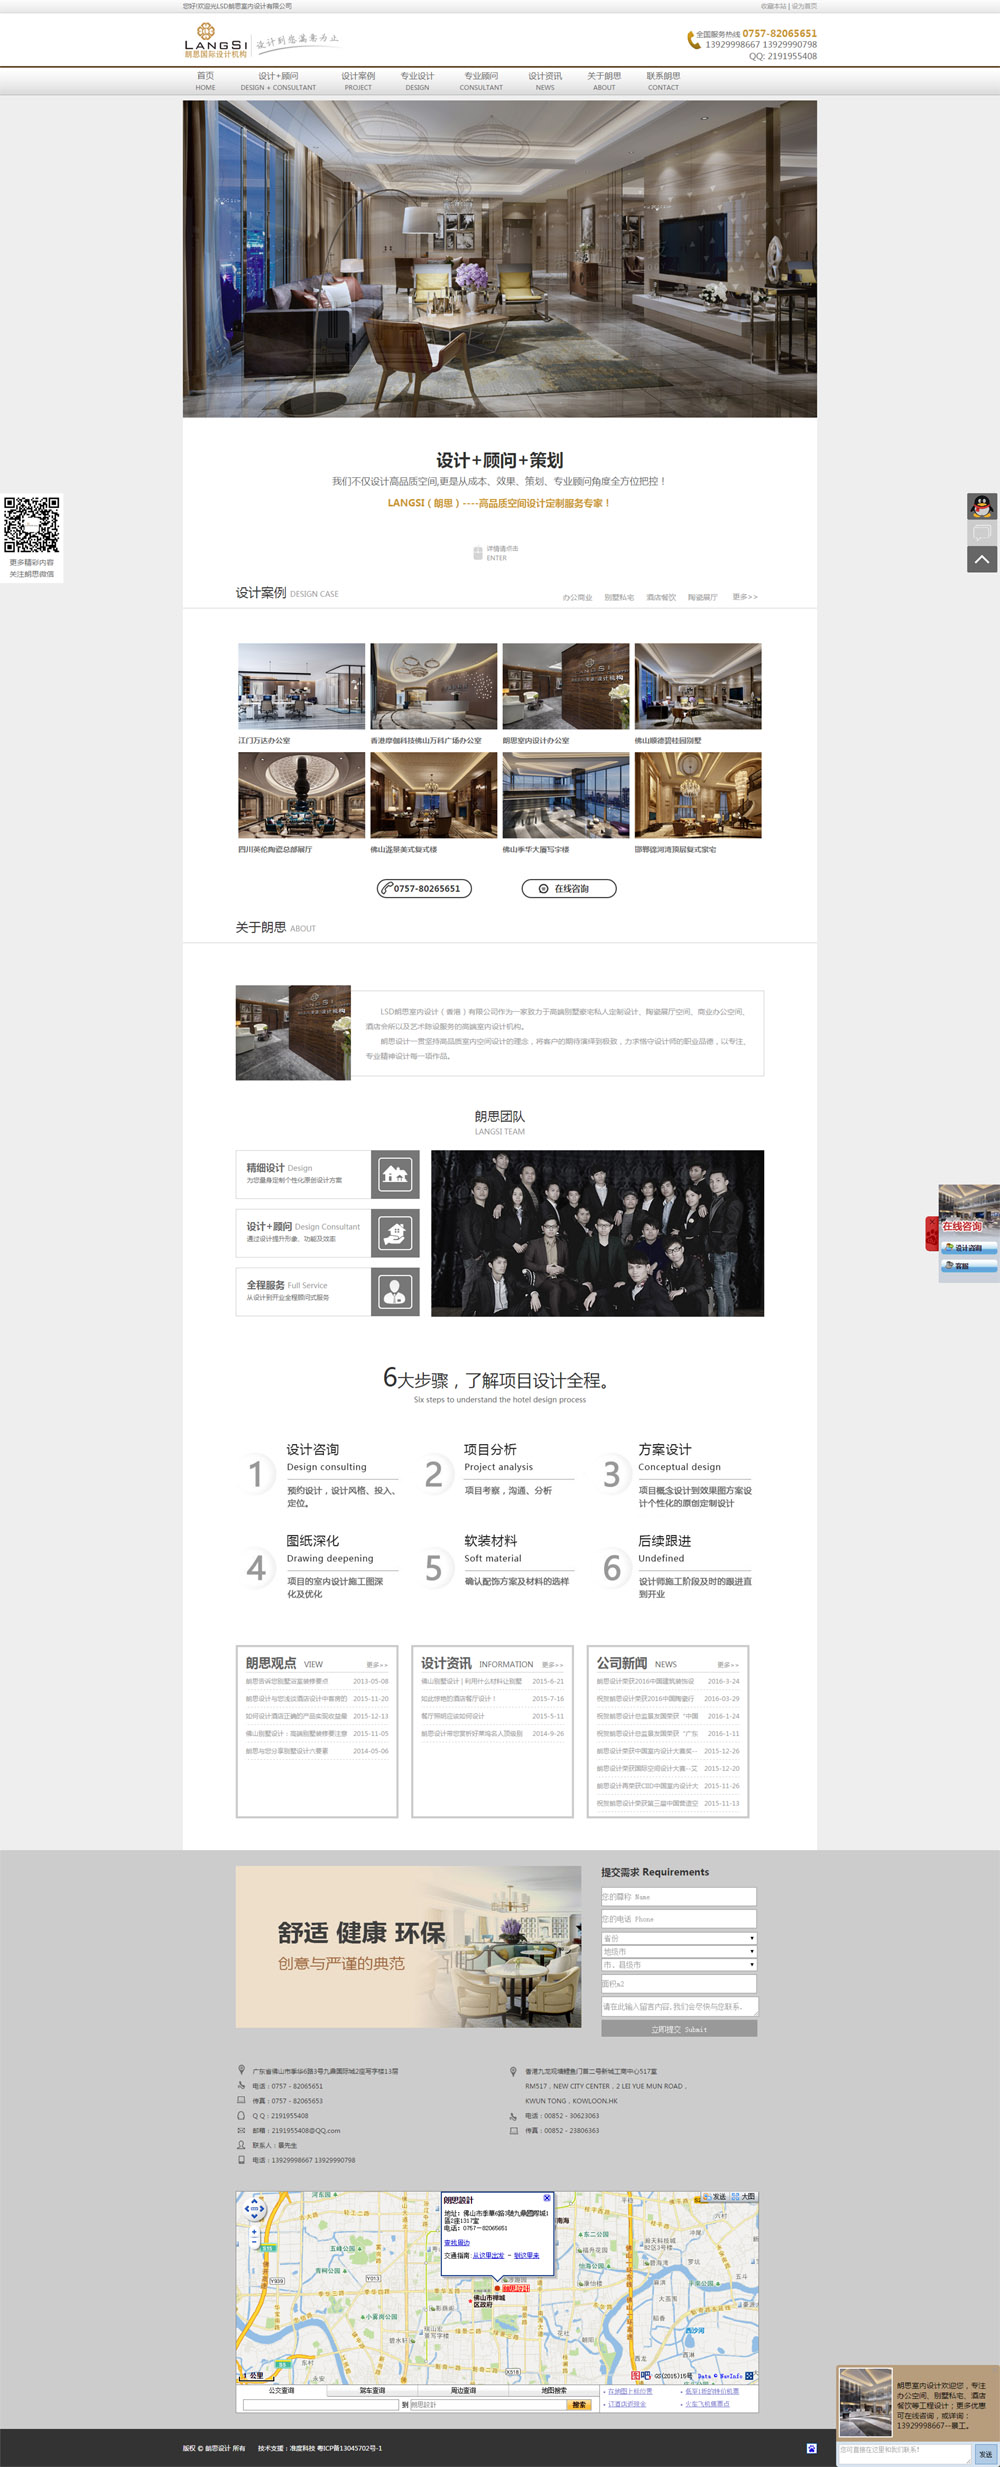 朗思室内设计品牌形象展示型网站建设案例